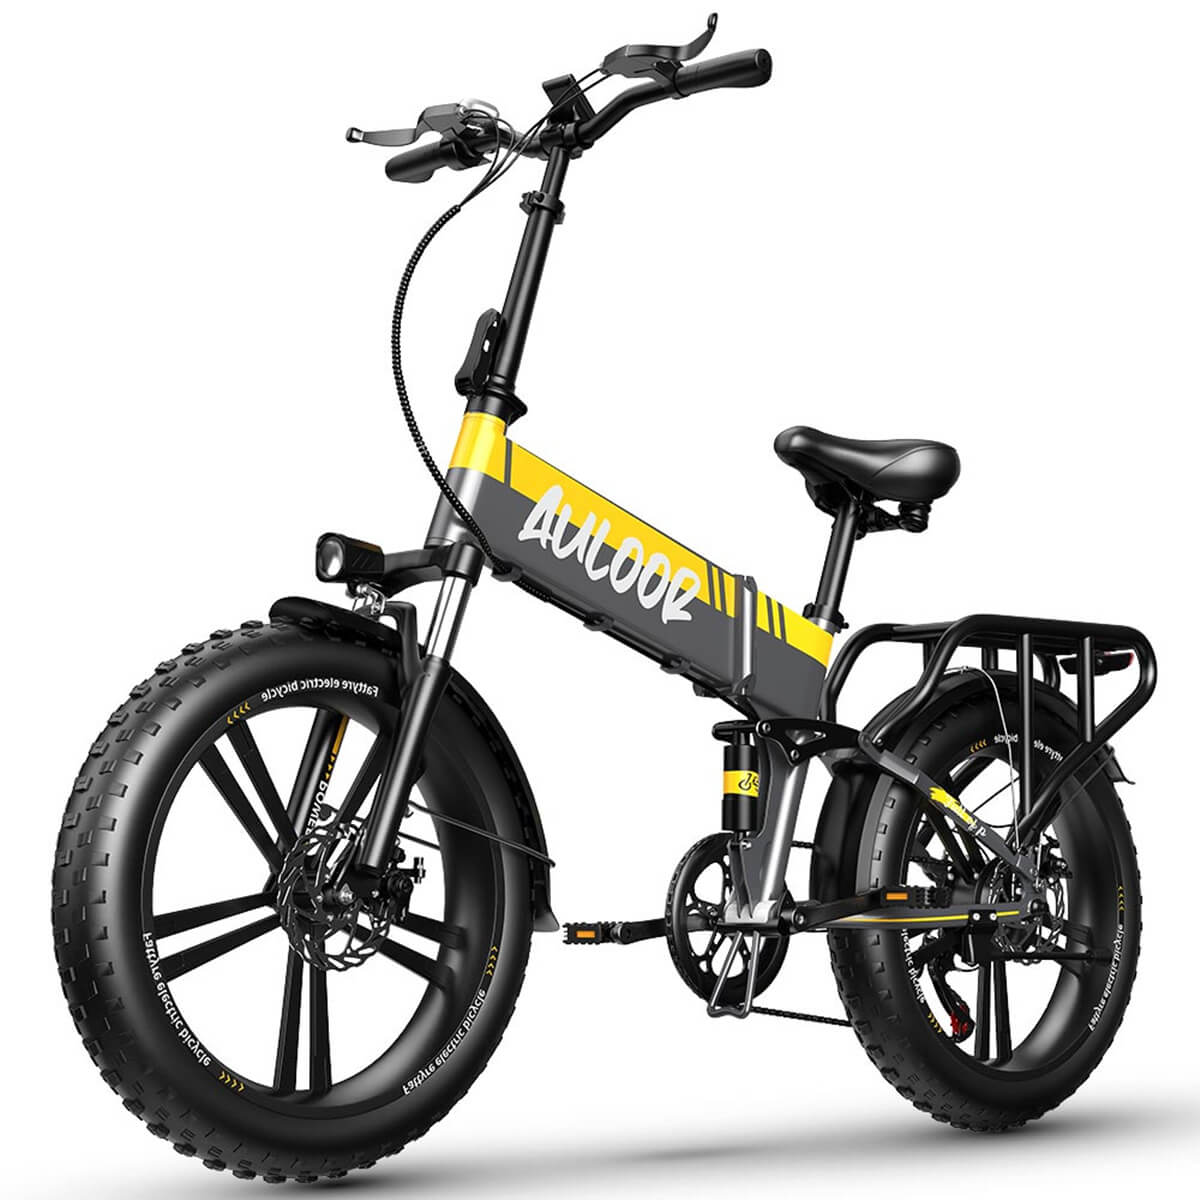  Auloor Bicicleta eléctrica plegable con motor de 500 W